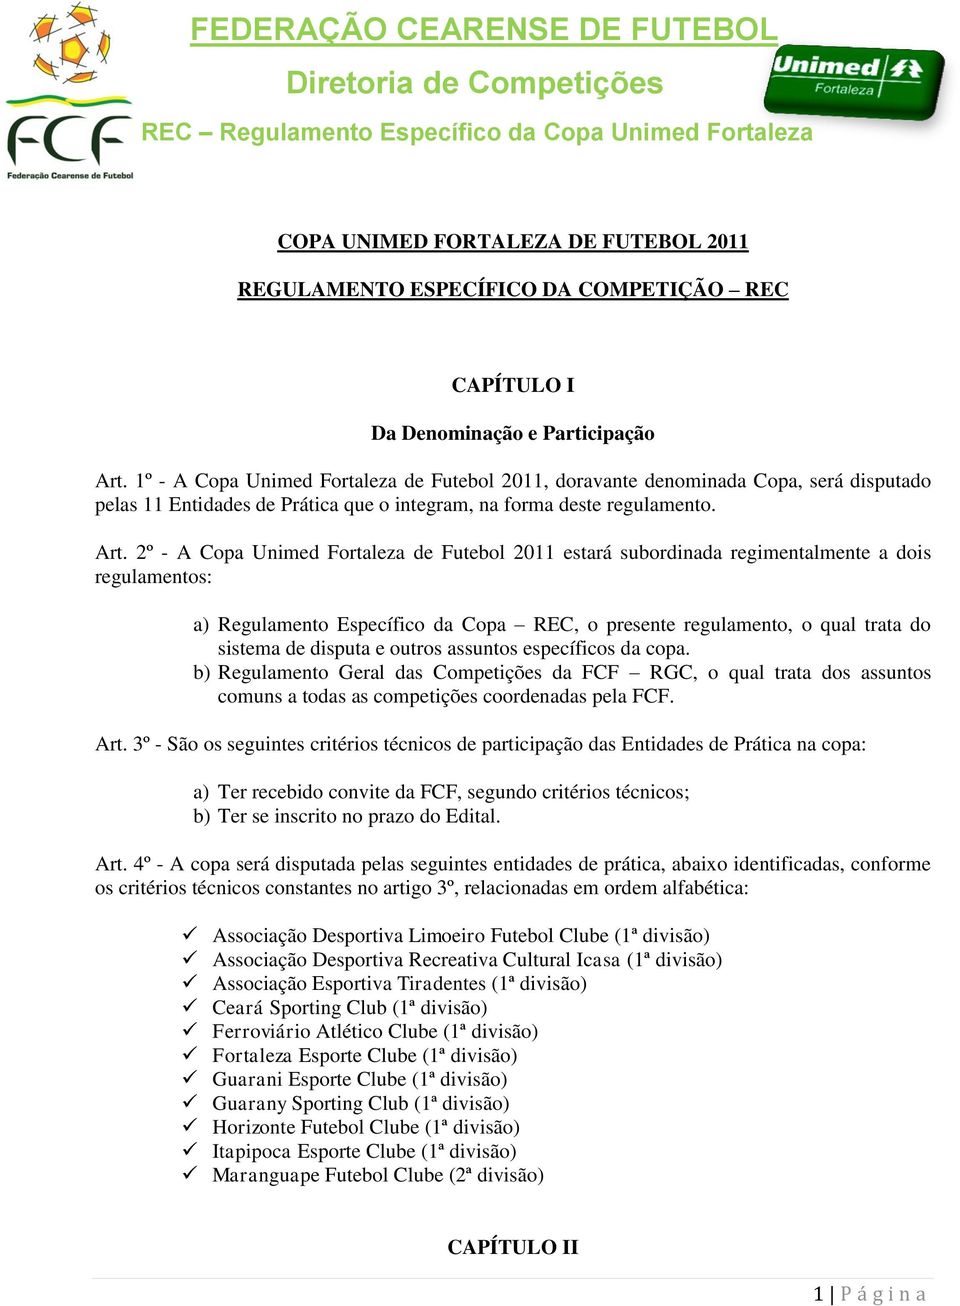 2º - A Copa Unimed Fortaleza de Futebol 2011 estará subordinada regimentalmente a dois regulamentos: a) Regulamento Específico da Copa REC, o presente regulamento, o qual trata do sistema de disputa